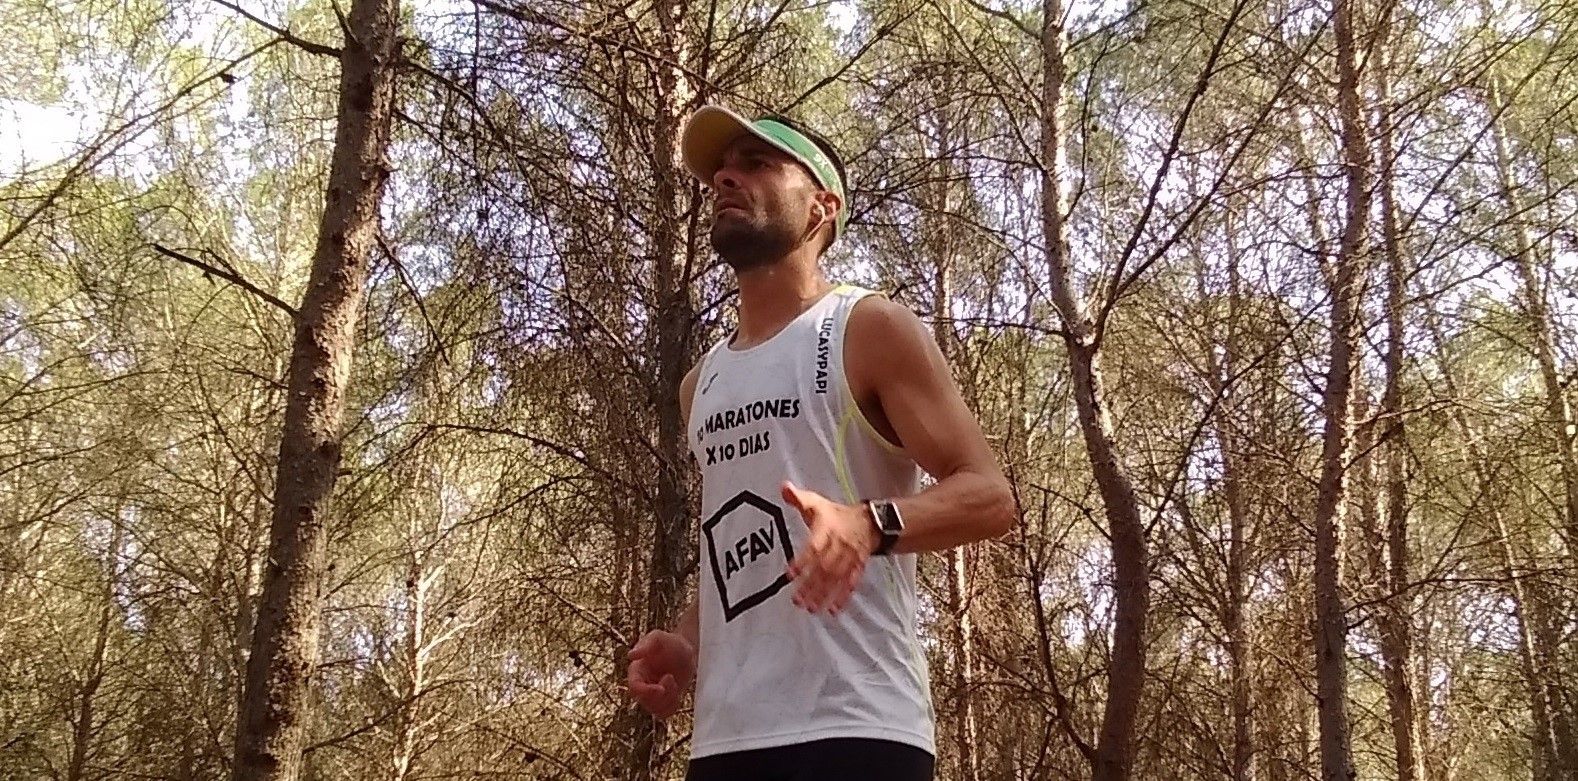 n entrenador valenciano correrá diez maratones seguidos para visibilizar el alzhéimer